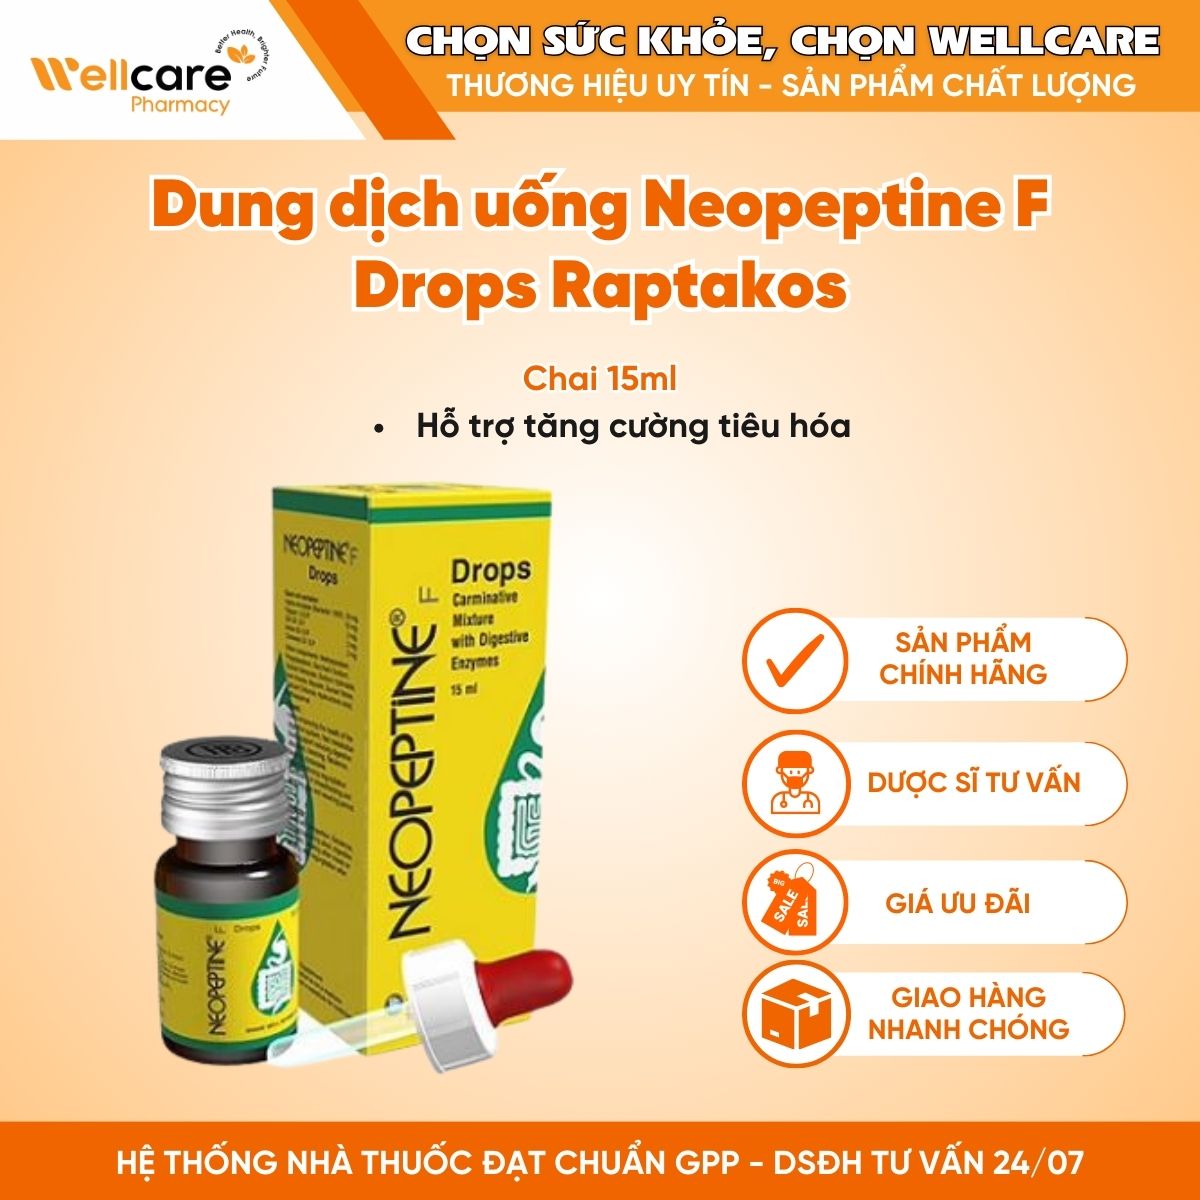 Dung dịch uống Neopeptine F Drops Raptakos – Hỗ trợ tăng cường tiêu hóa (Chai 15ml)